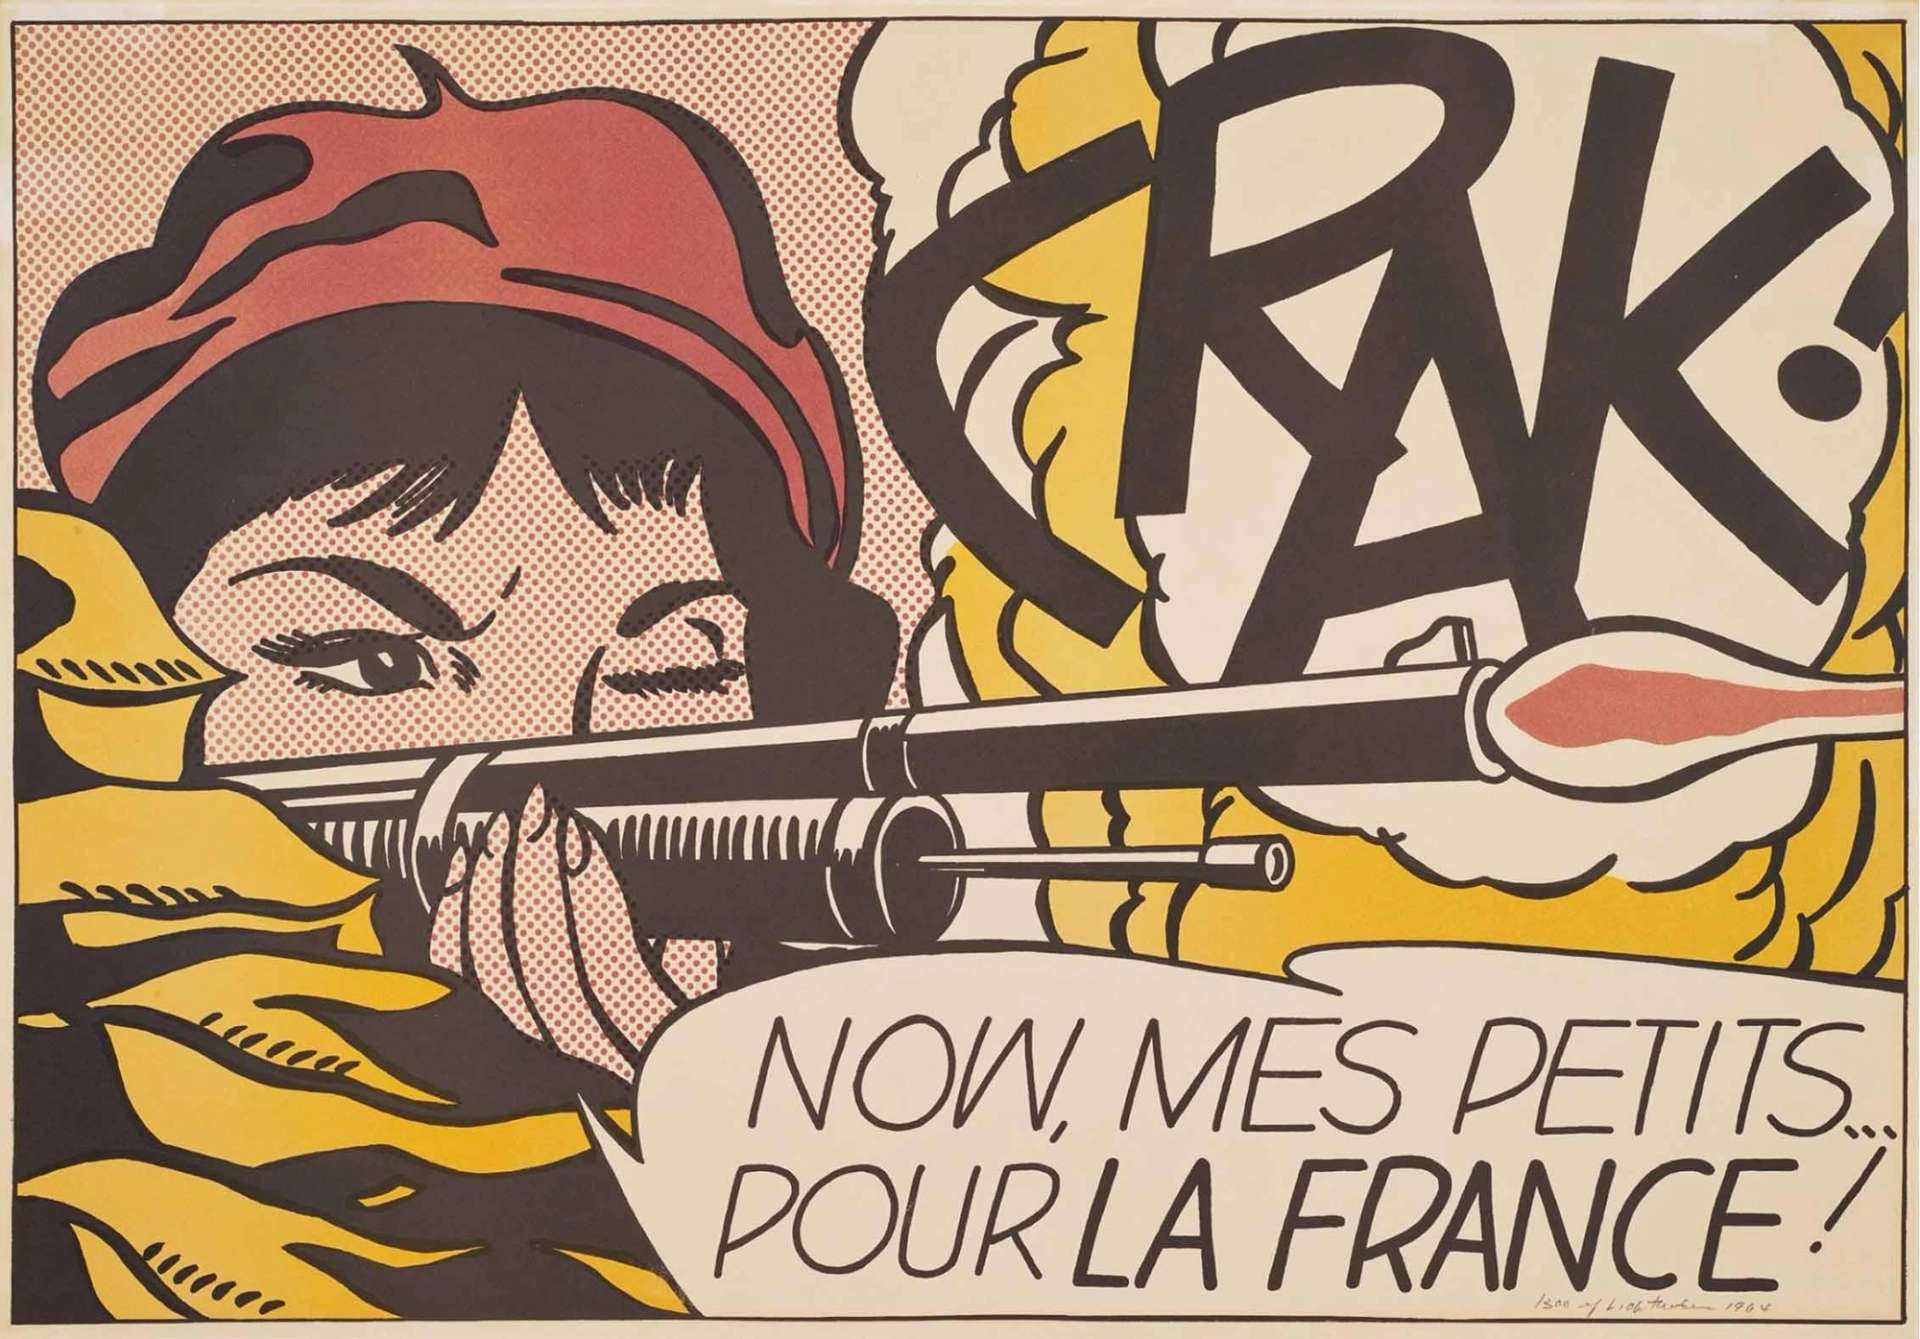 Crak - Signed Print by Roy Lichtenstein 1963 - MyArtBroker